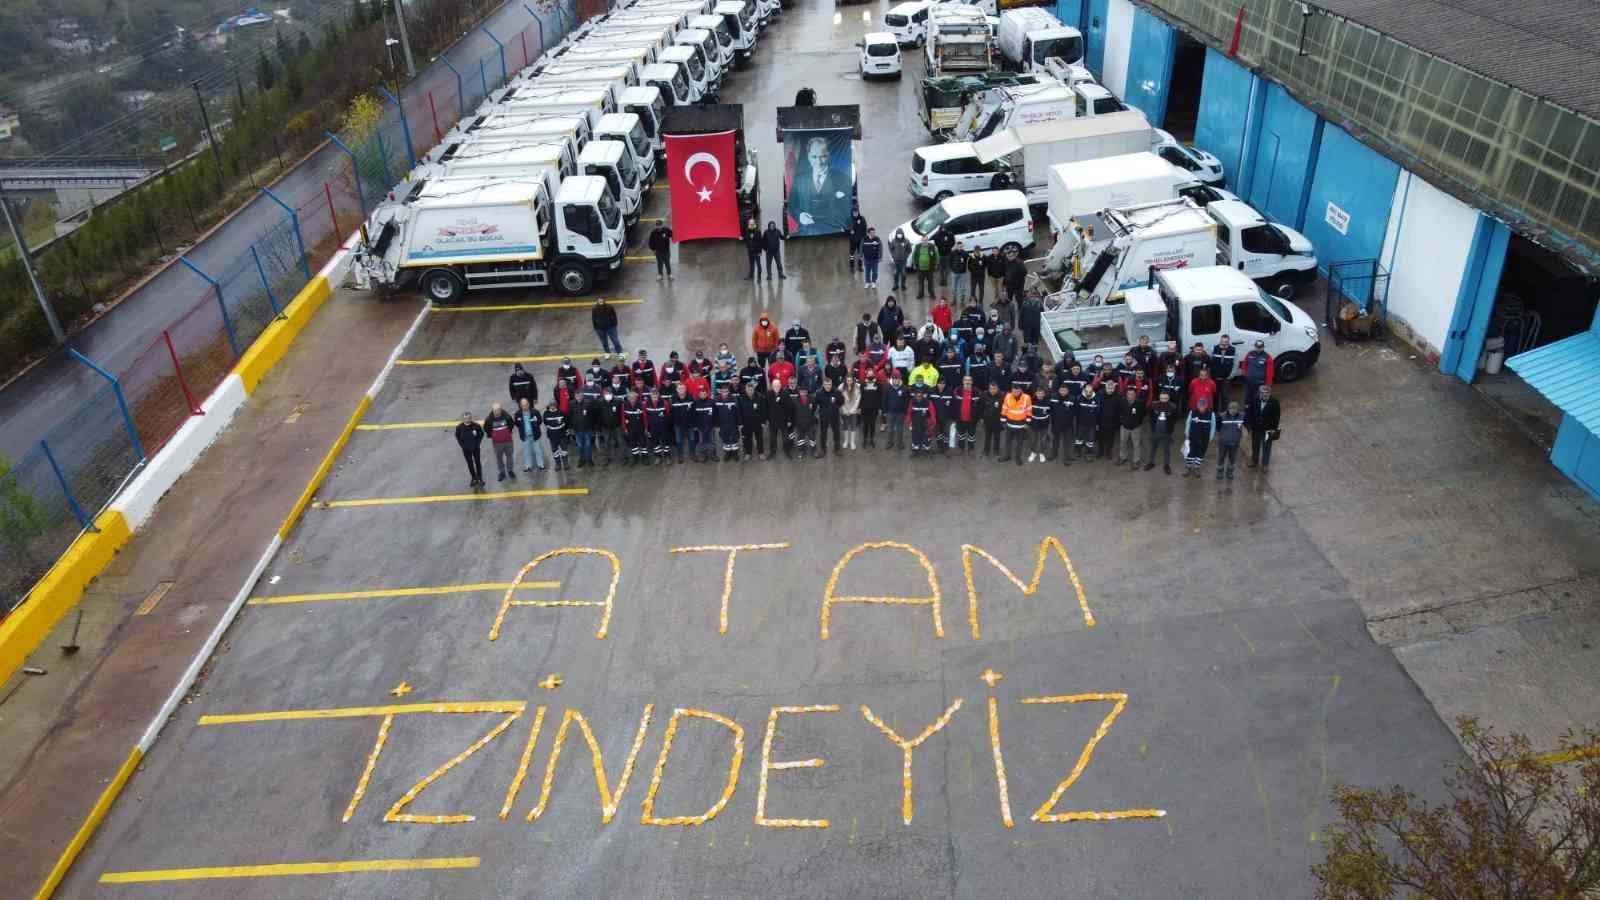 Temizlik işçileri eldivenleriyle yazdı: Atam izindeyiz #kocaeli